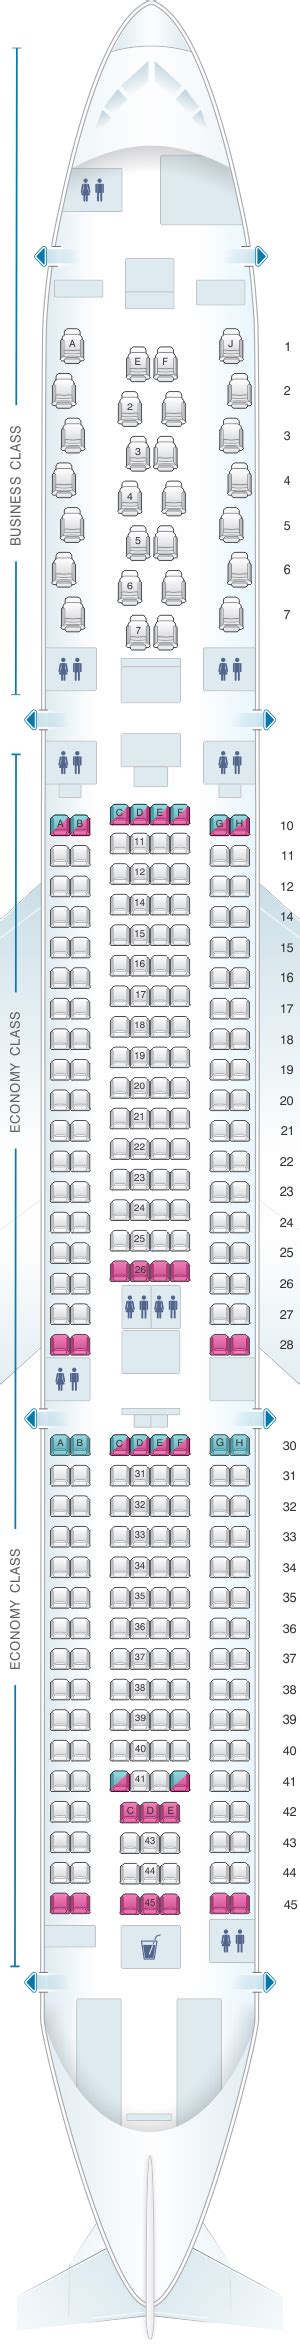 Air Mauritius A350 Seat Map